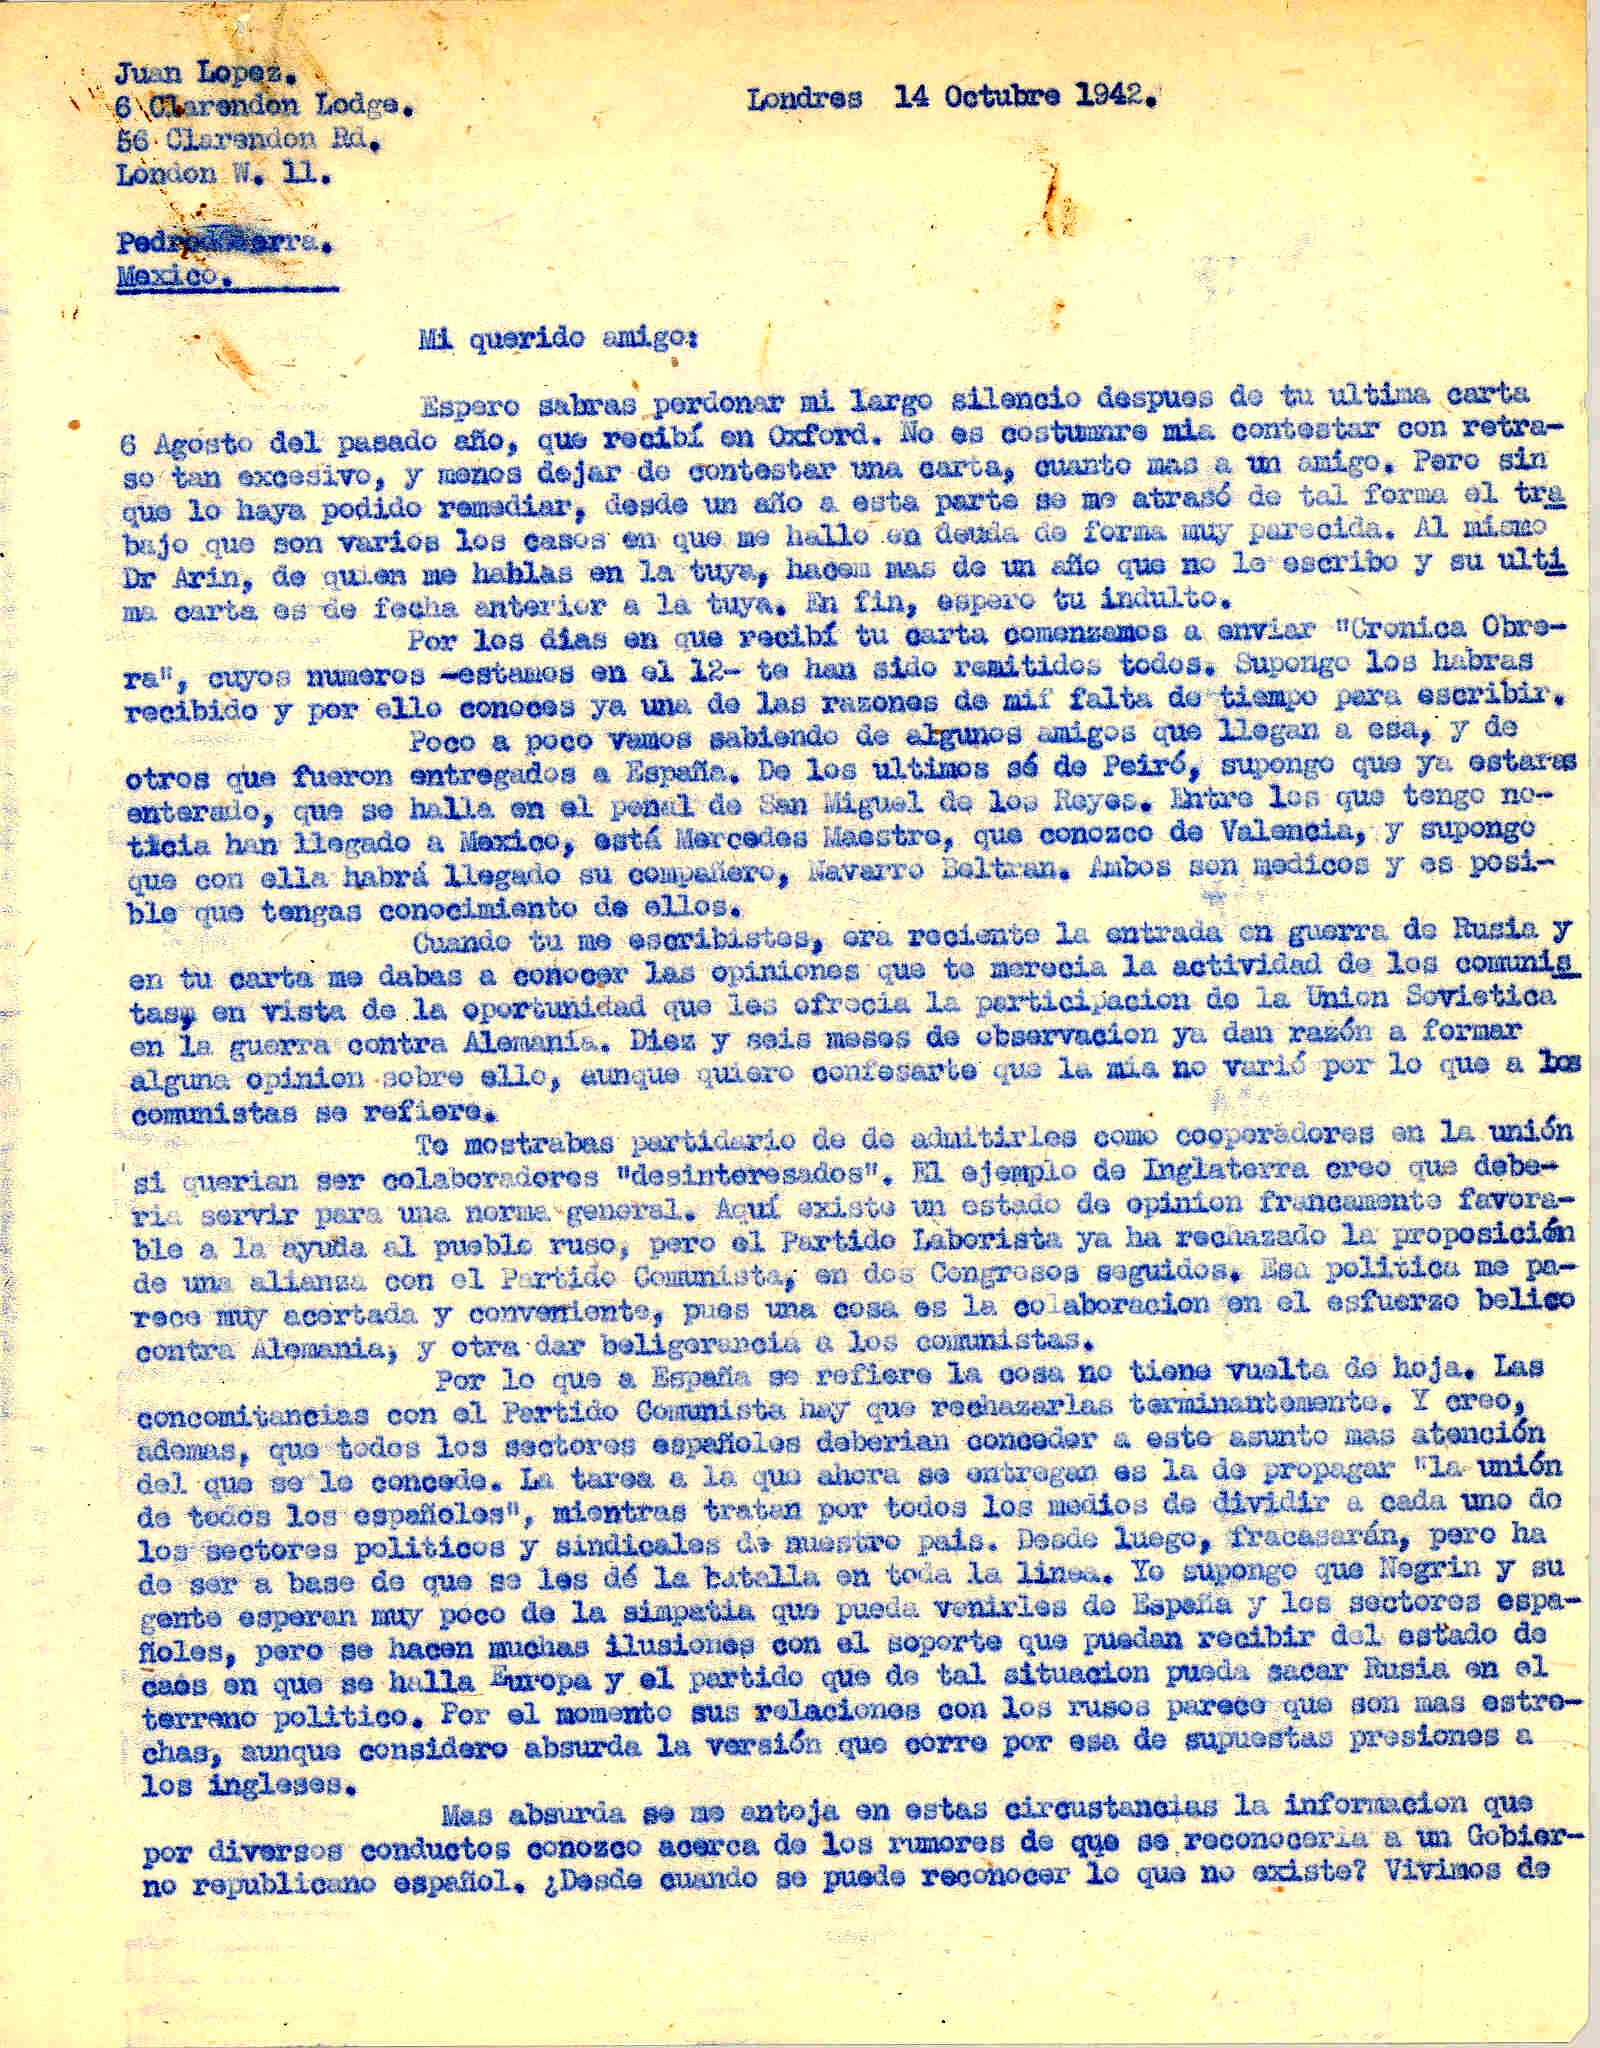 Carta a Pedro Sierra hablando de la situación de España y Europa ante la limpieza del totalitarismo